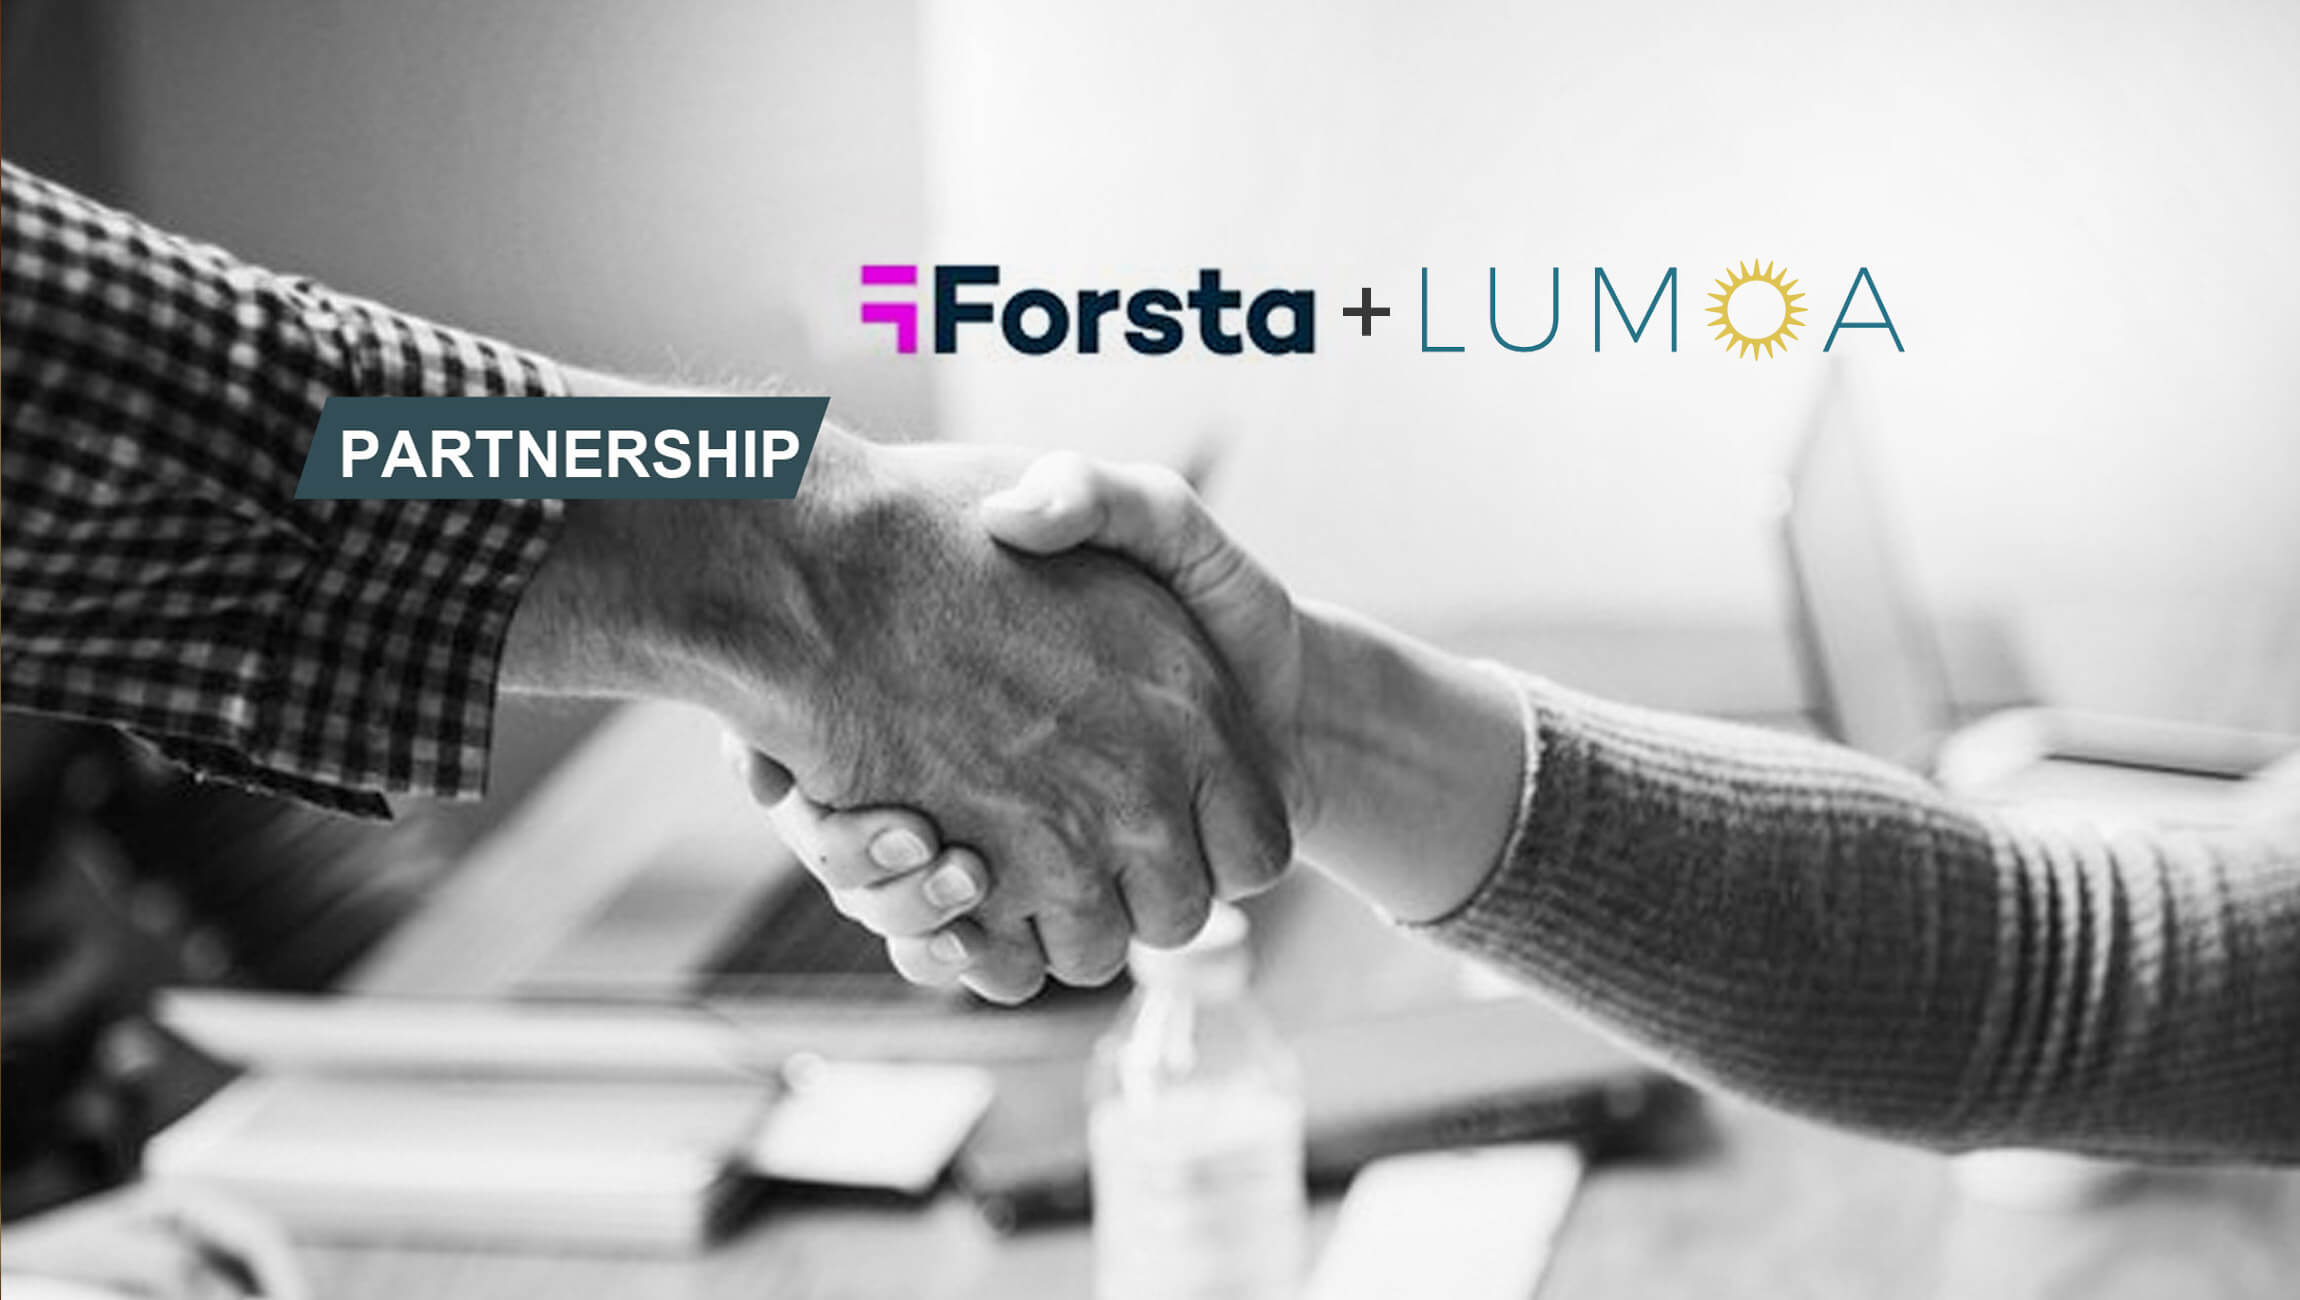 Forsta partnered with Lumoa